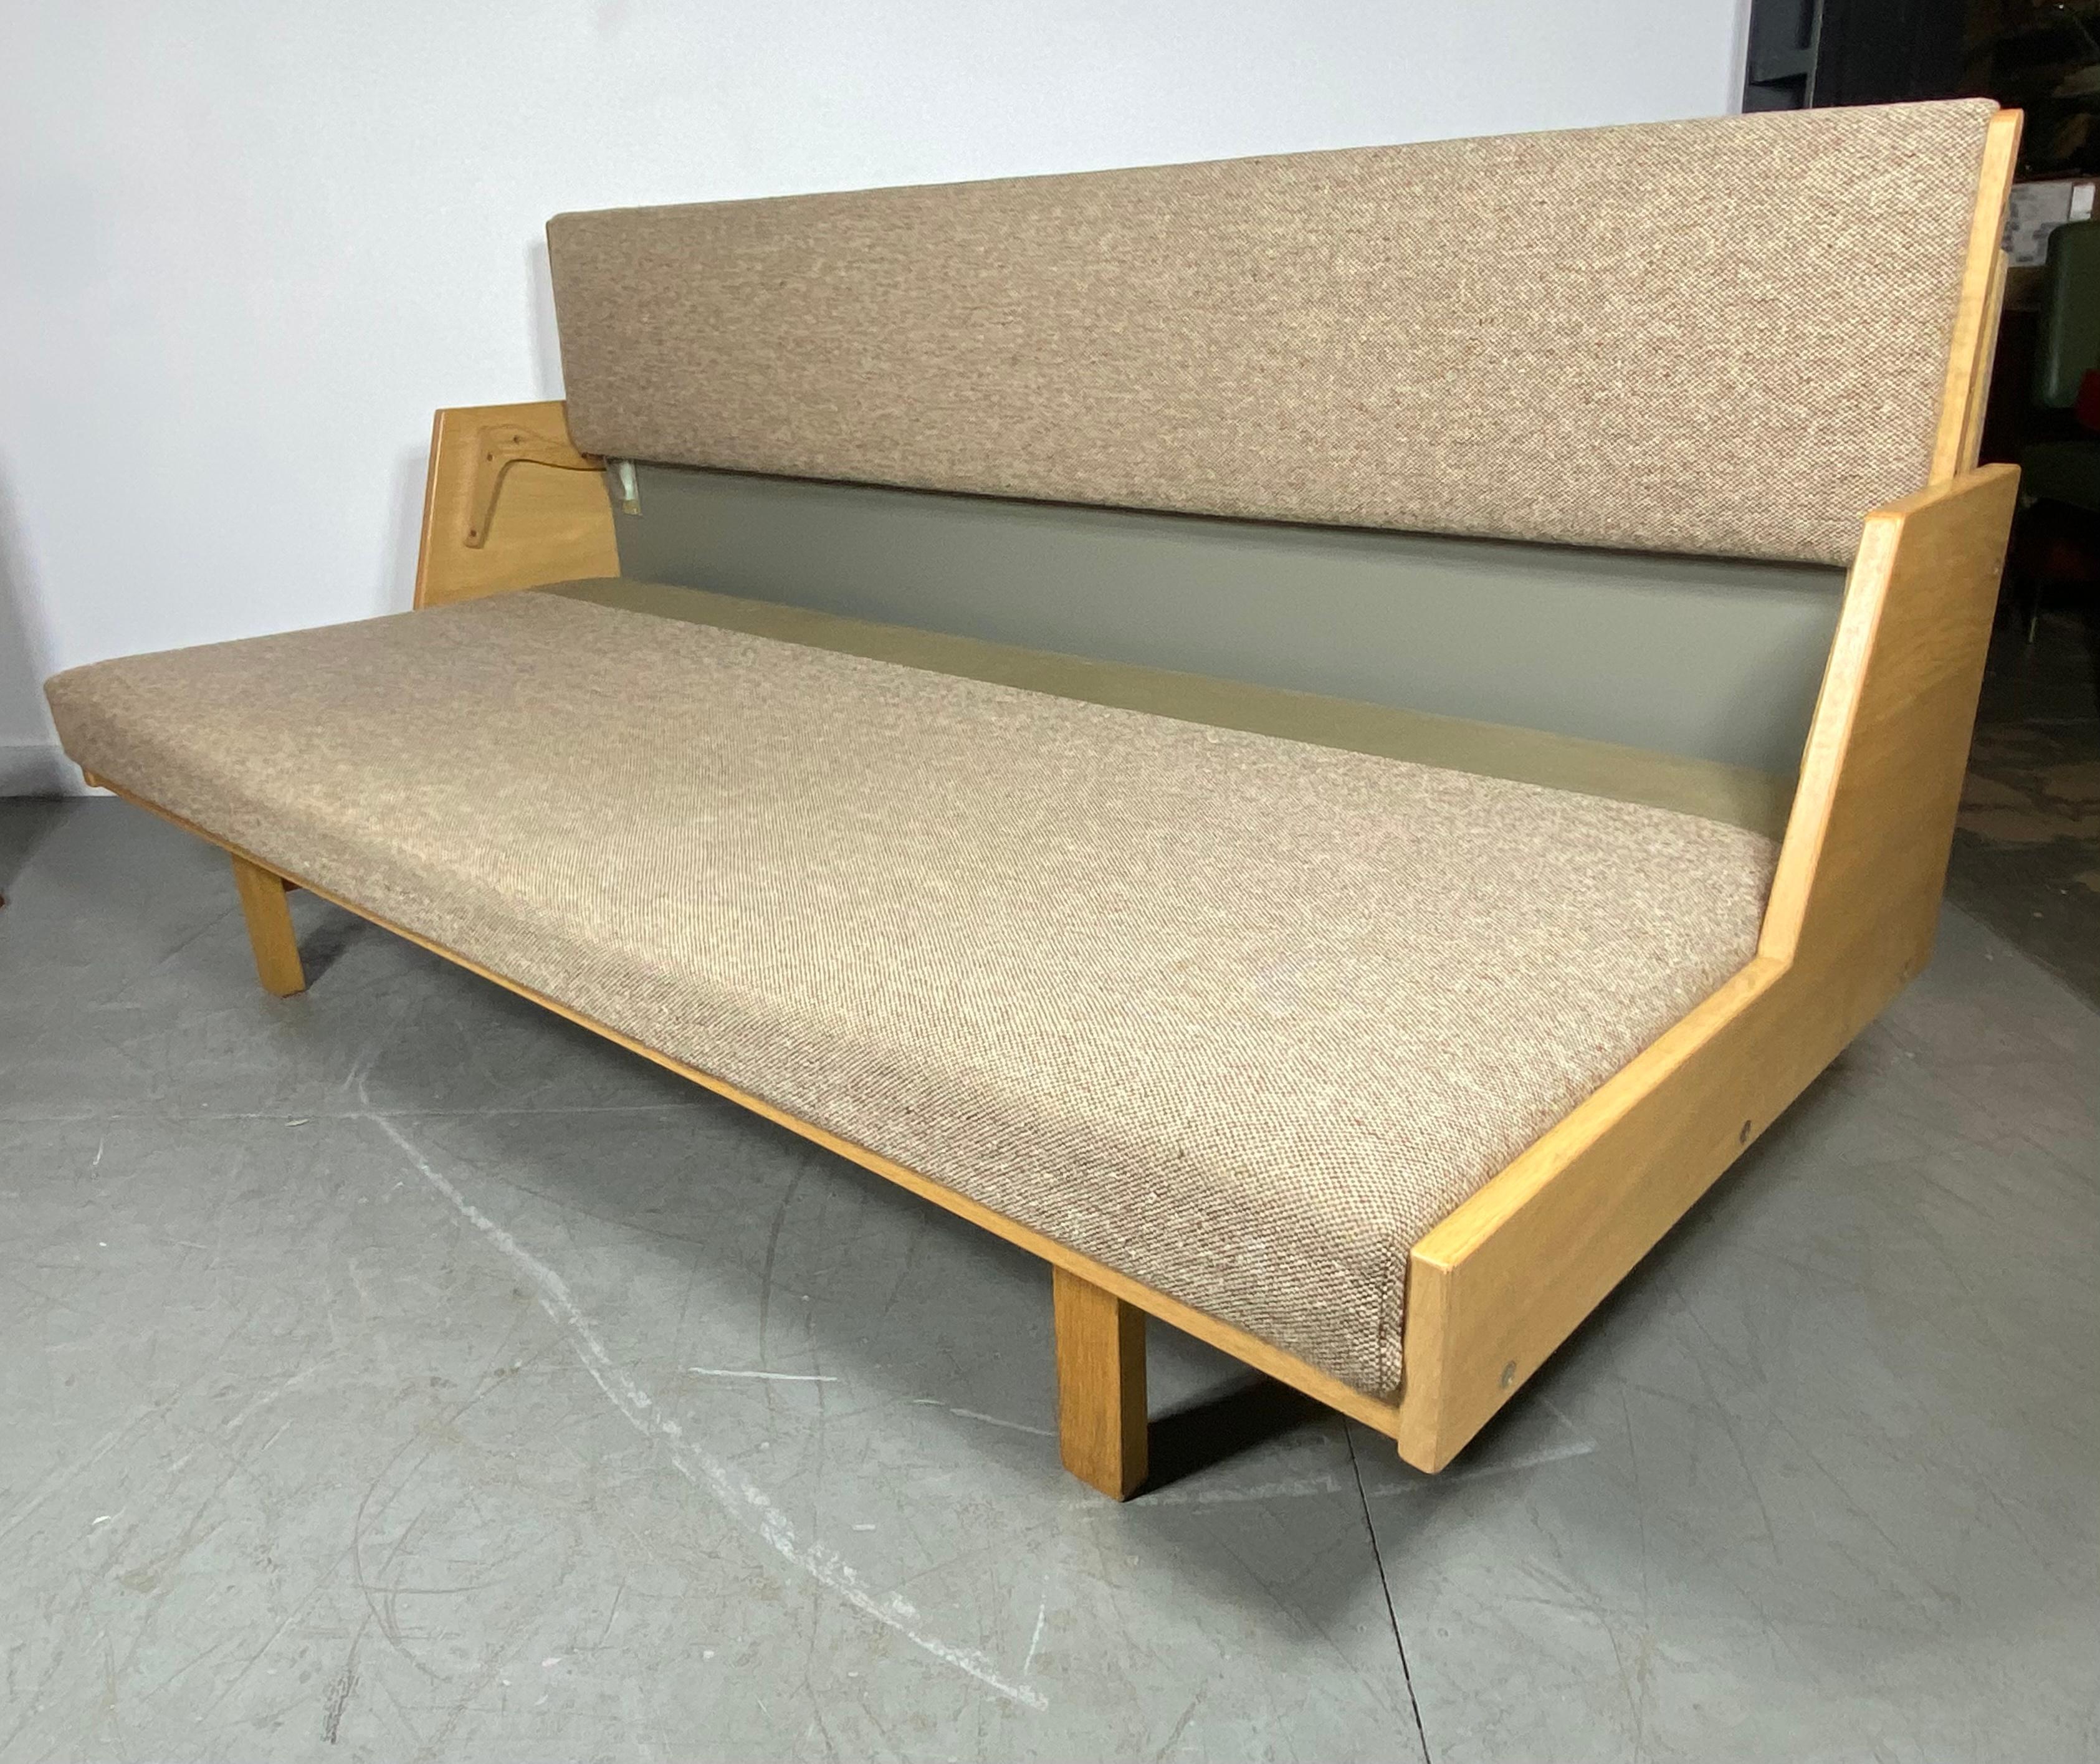 Das 1954 von Hans Wegner entworfene Daybed GE 258 ist ein vielseitiges Möbelstück. Die gepolsterte Rückenlehne lässt sich anheben, um ein geräumiges Bett zu erhalten. Diese Bank aus Massivholz wird in der GETAMA-Fabrik im dänischen Gedsted von